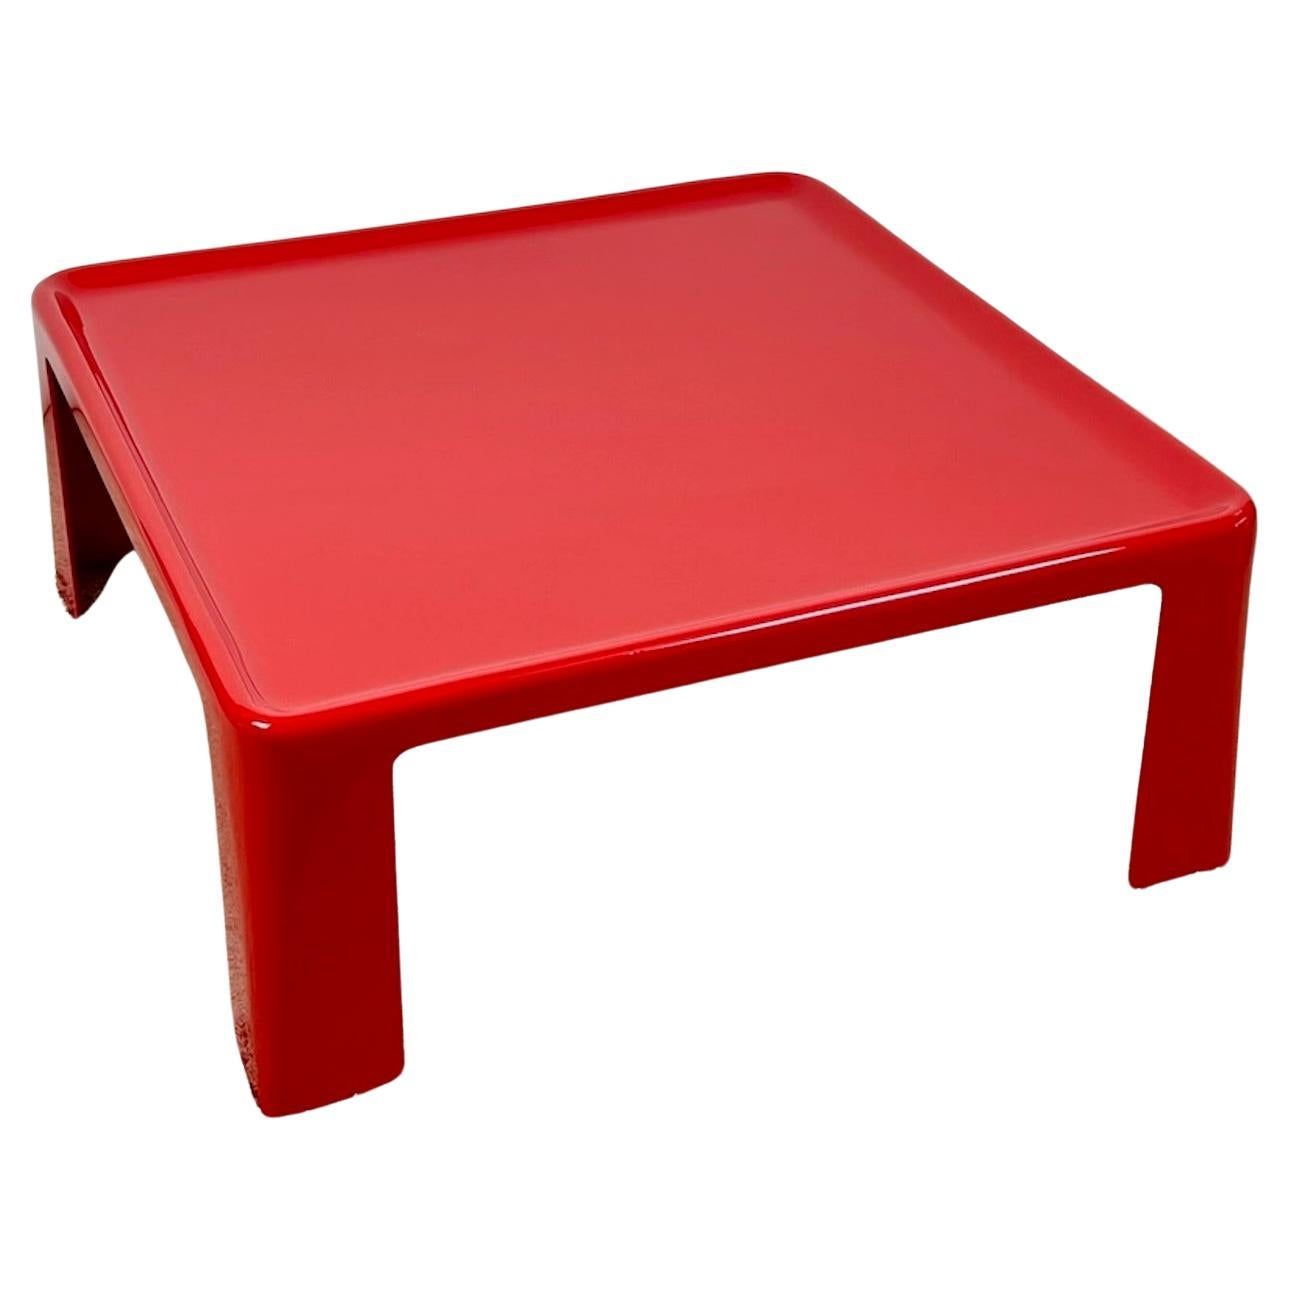 Amanta-Tisch Mario Bellini für B&B Italia – Ikonisches 60er-Jahre-Design – Rotes Glasfaser